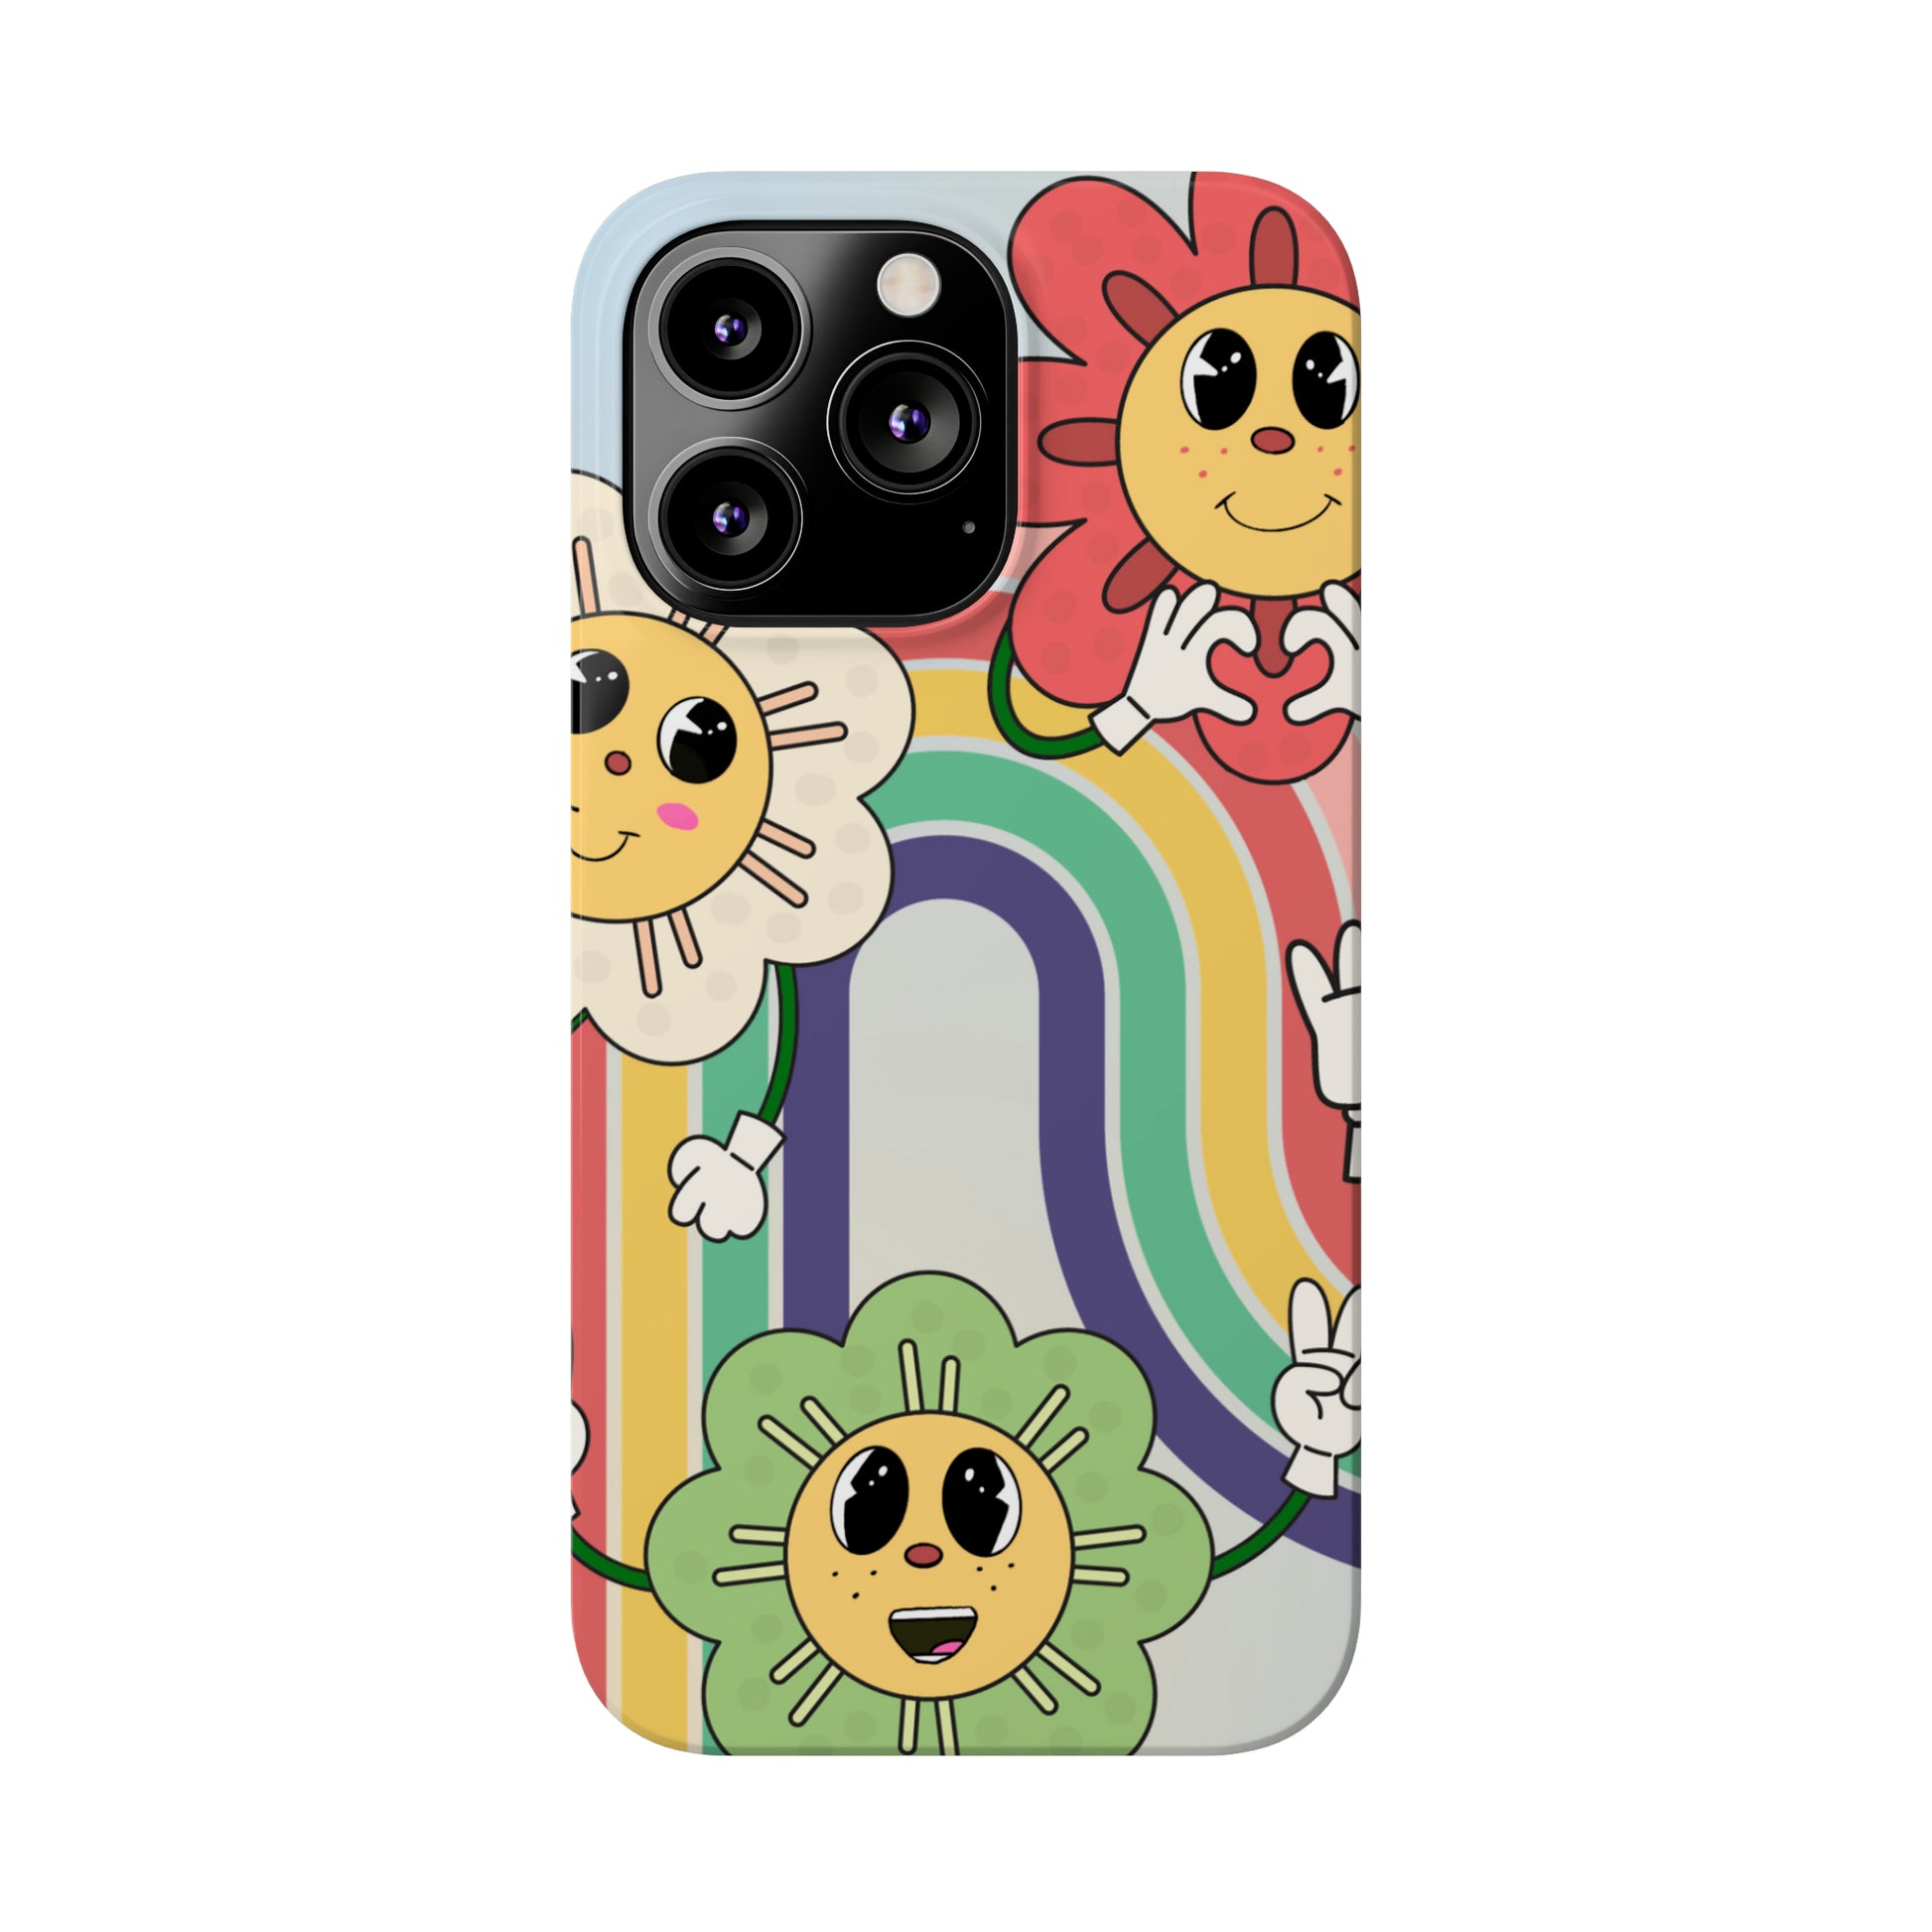 Retro Cartoon Flowers iphone case